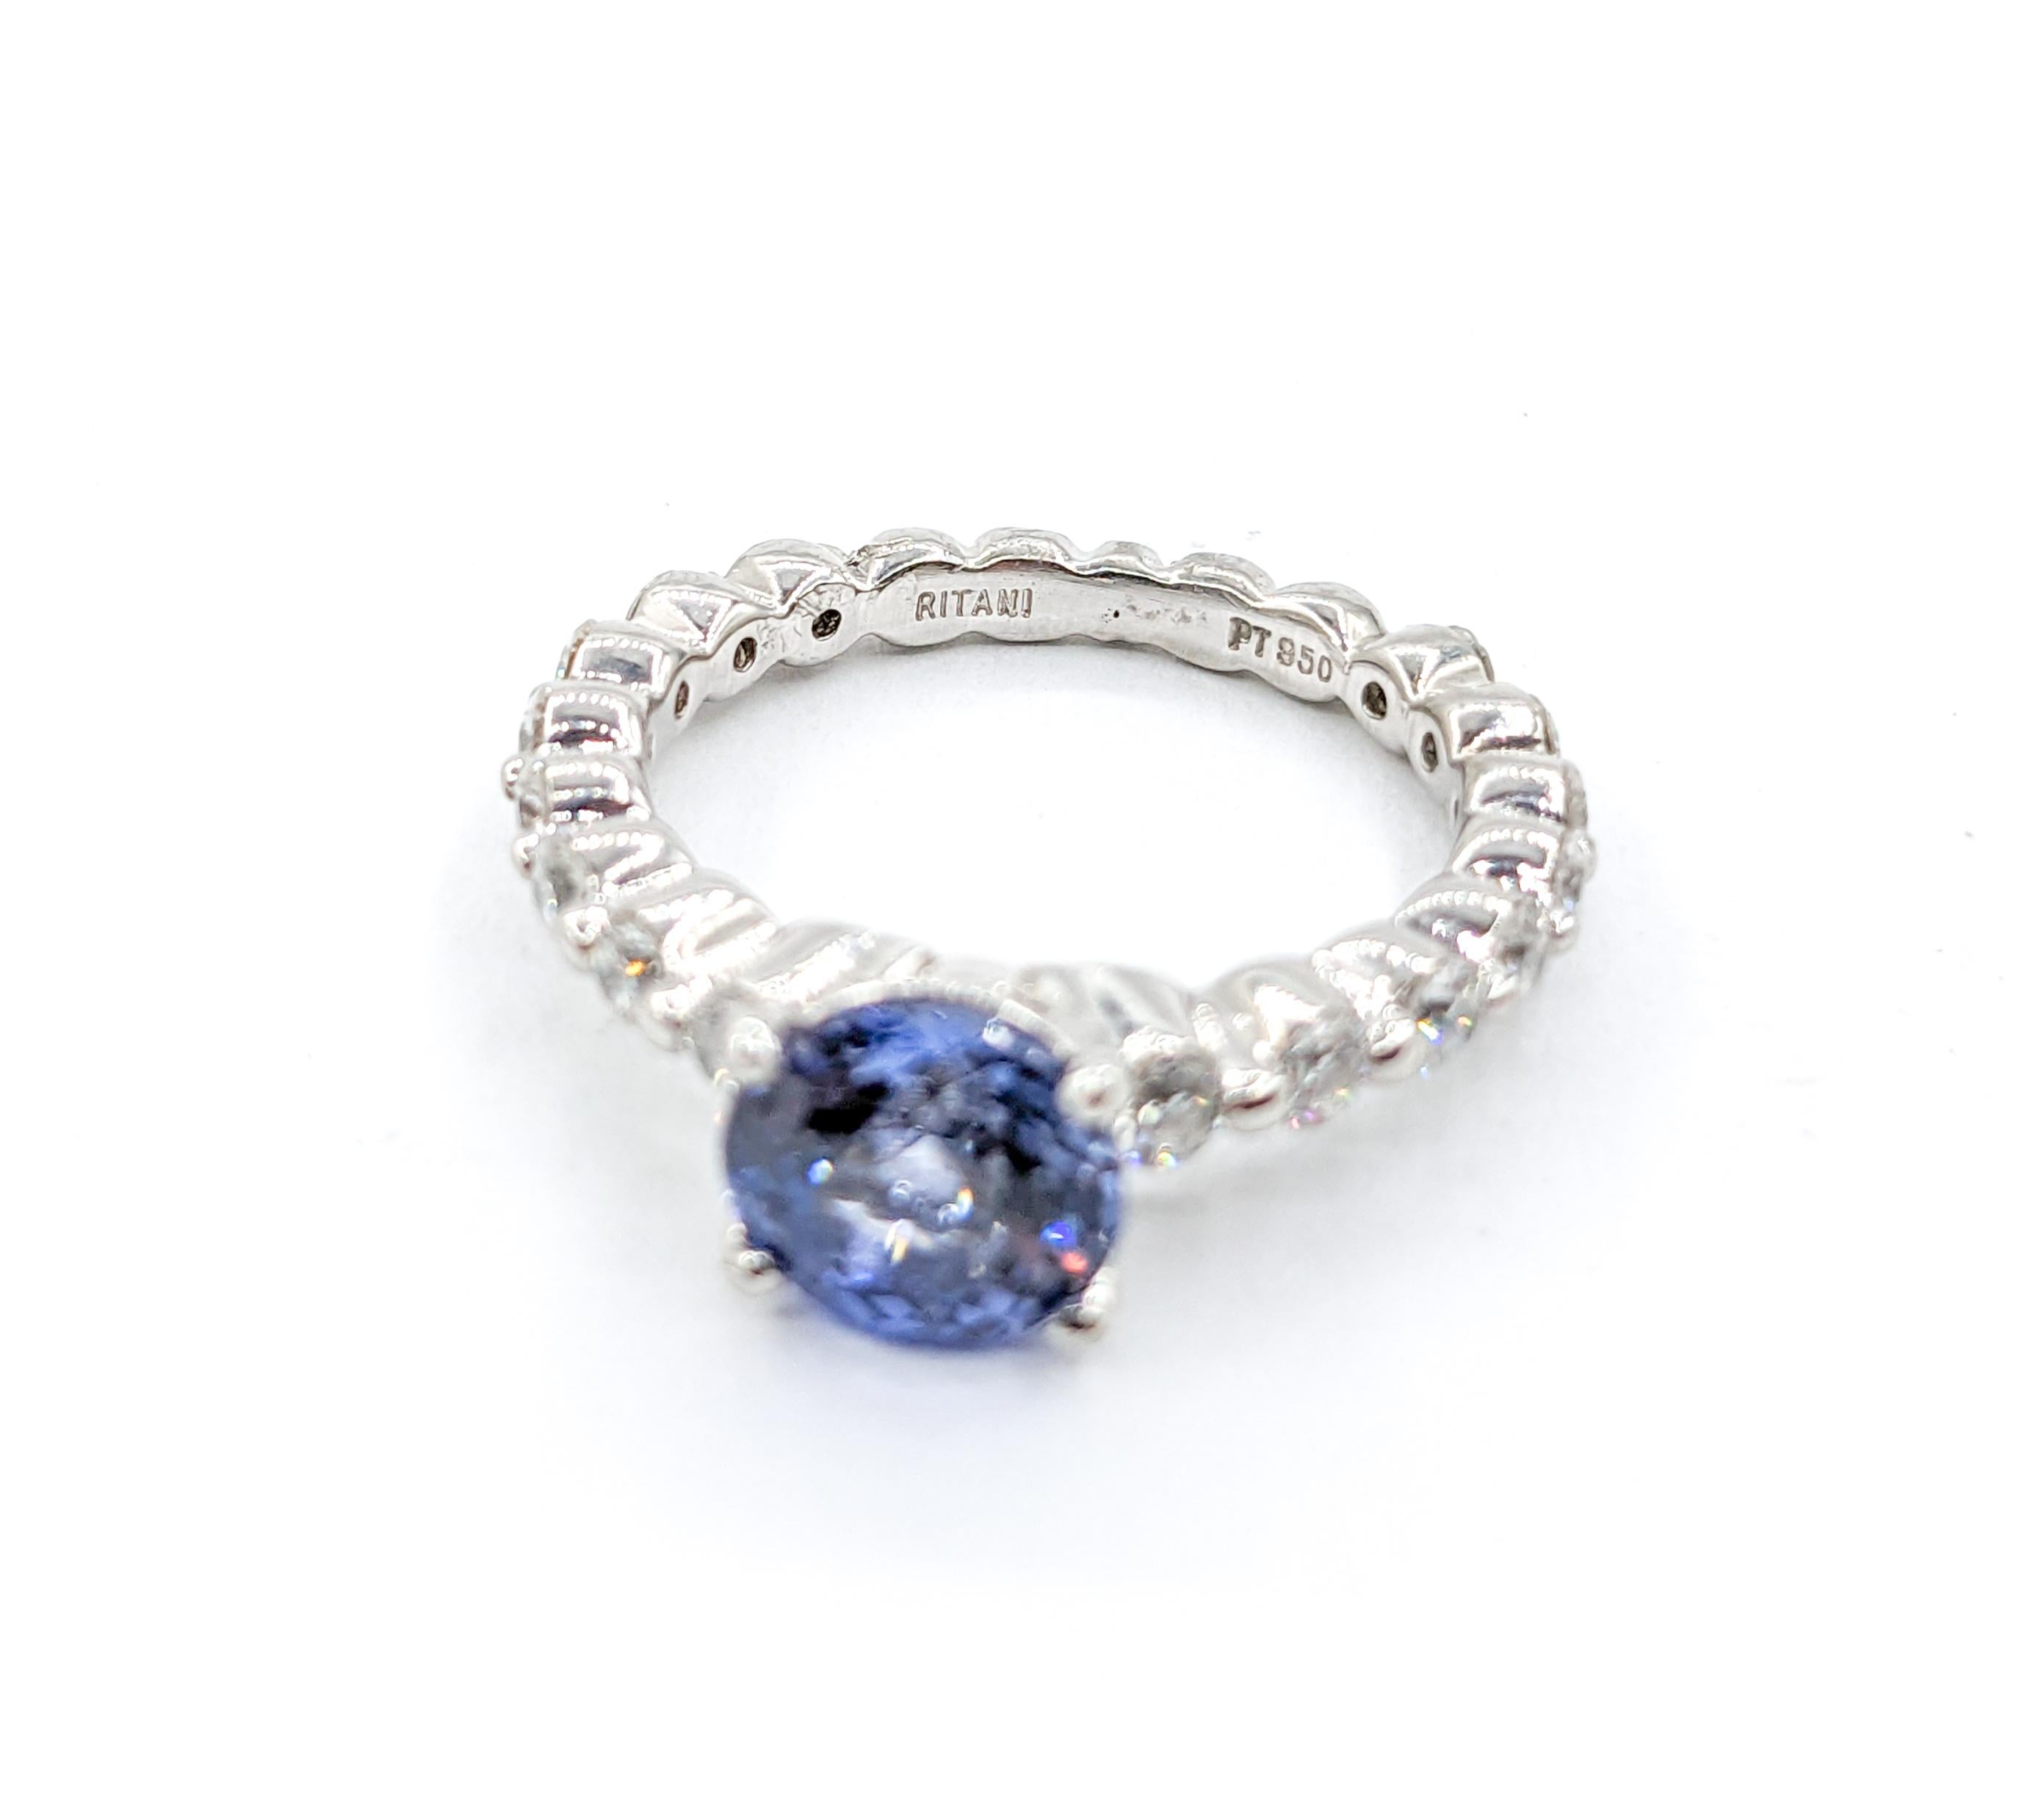 1.9ct Blue Sapphire &.50ctw Diamond Ritani Ring In Premium Platinum For Sale 2